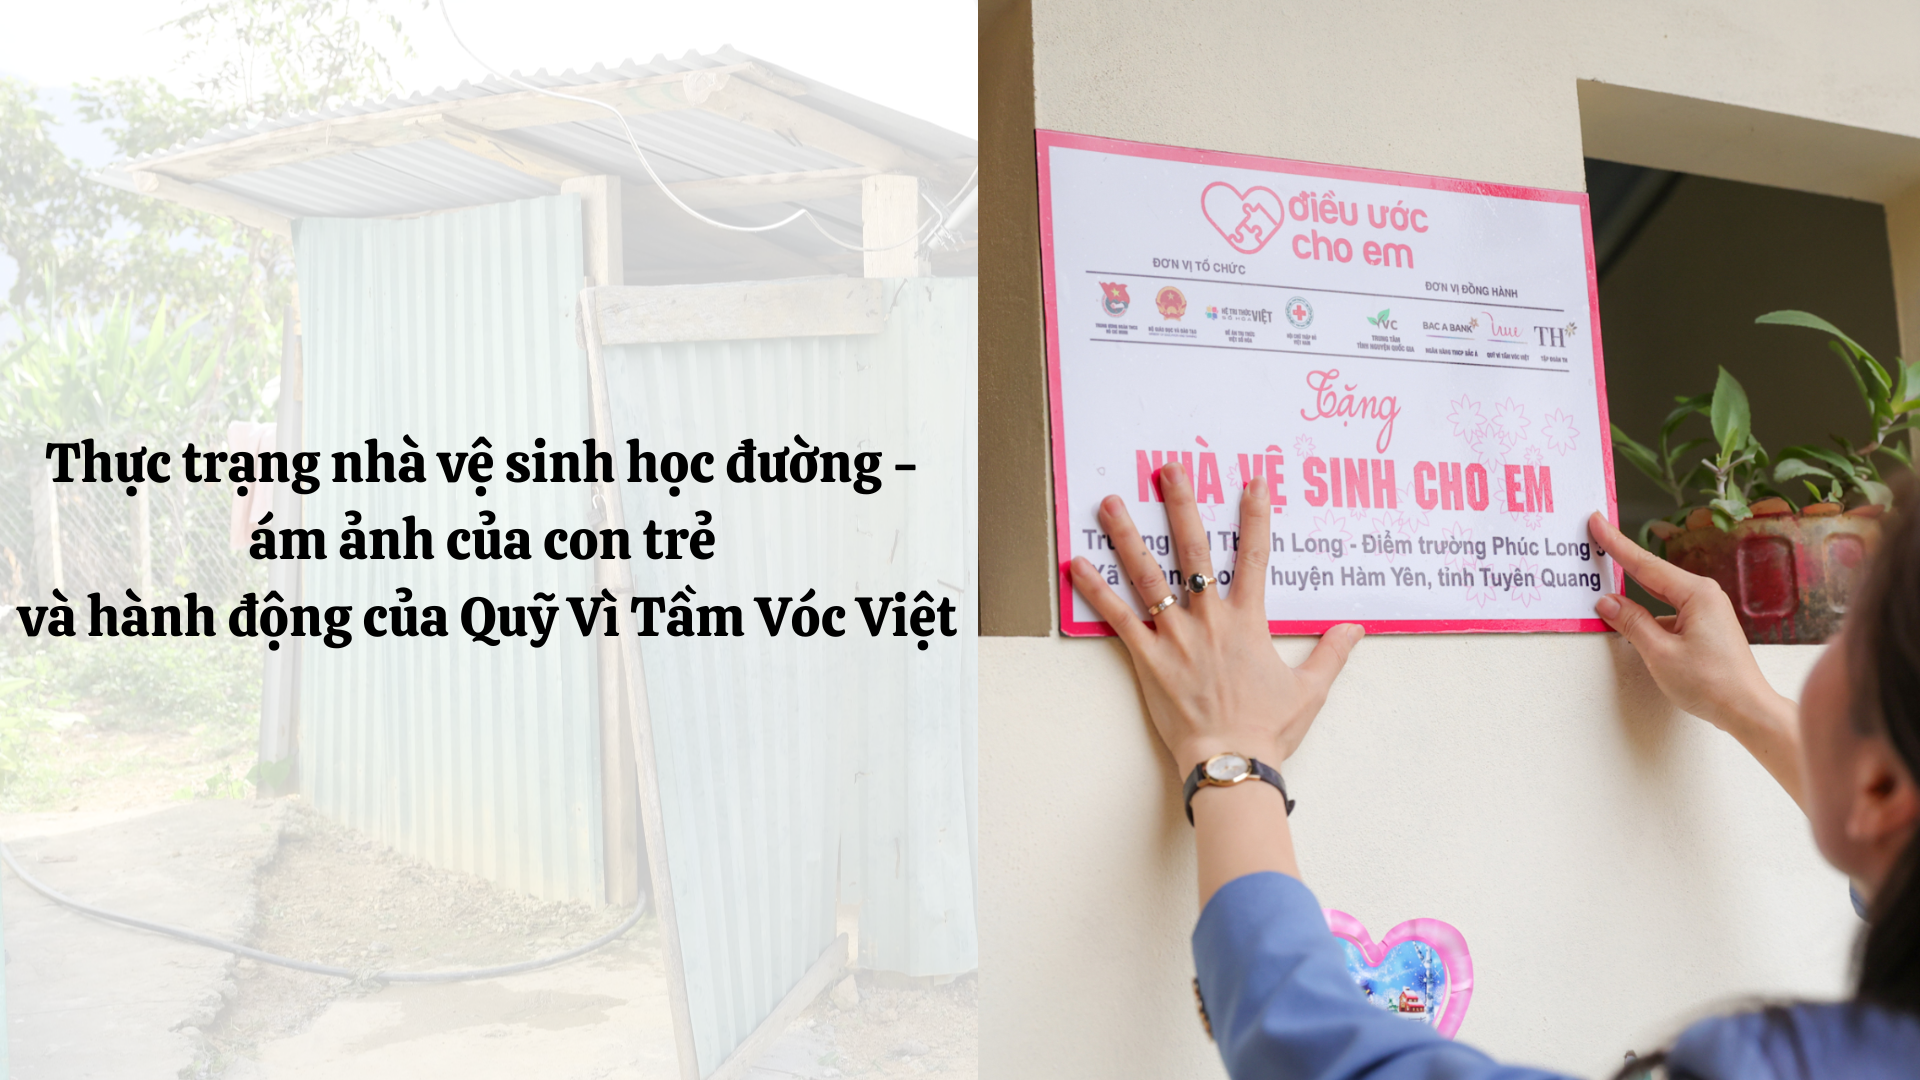 Thực trạng nhà vệ sinh học đường - ám ảnh của con trẻ và hành động của Quỹ Vì Tầm Vóc Việt